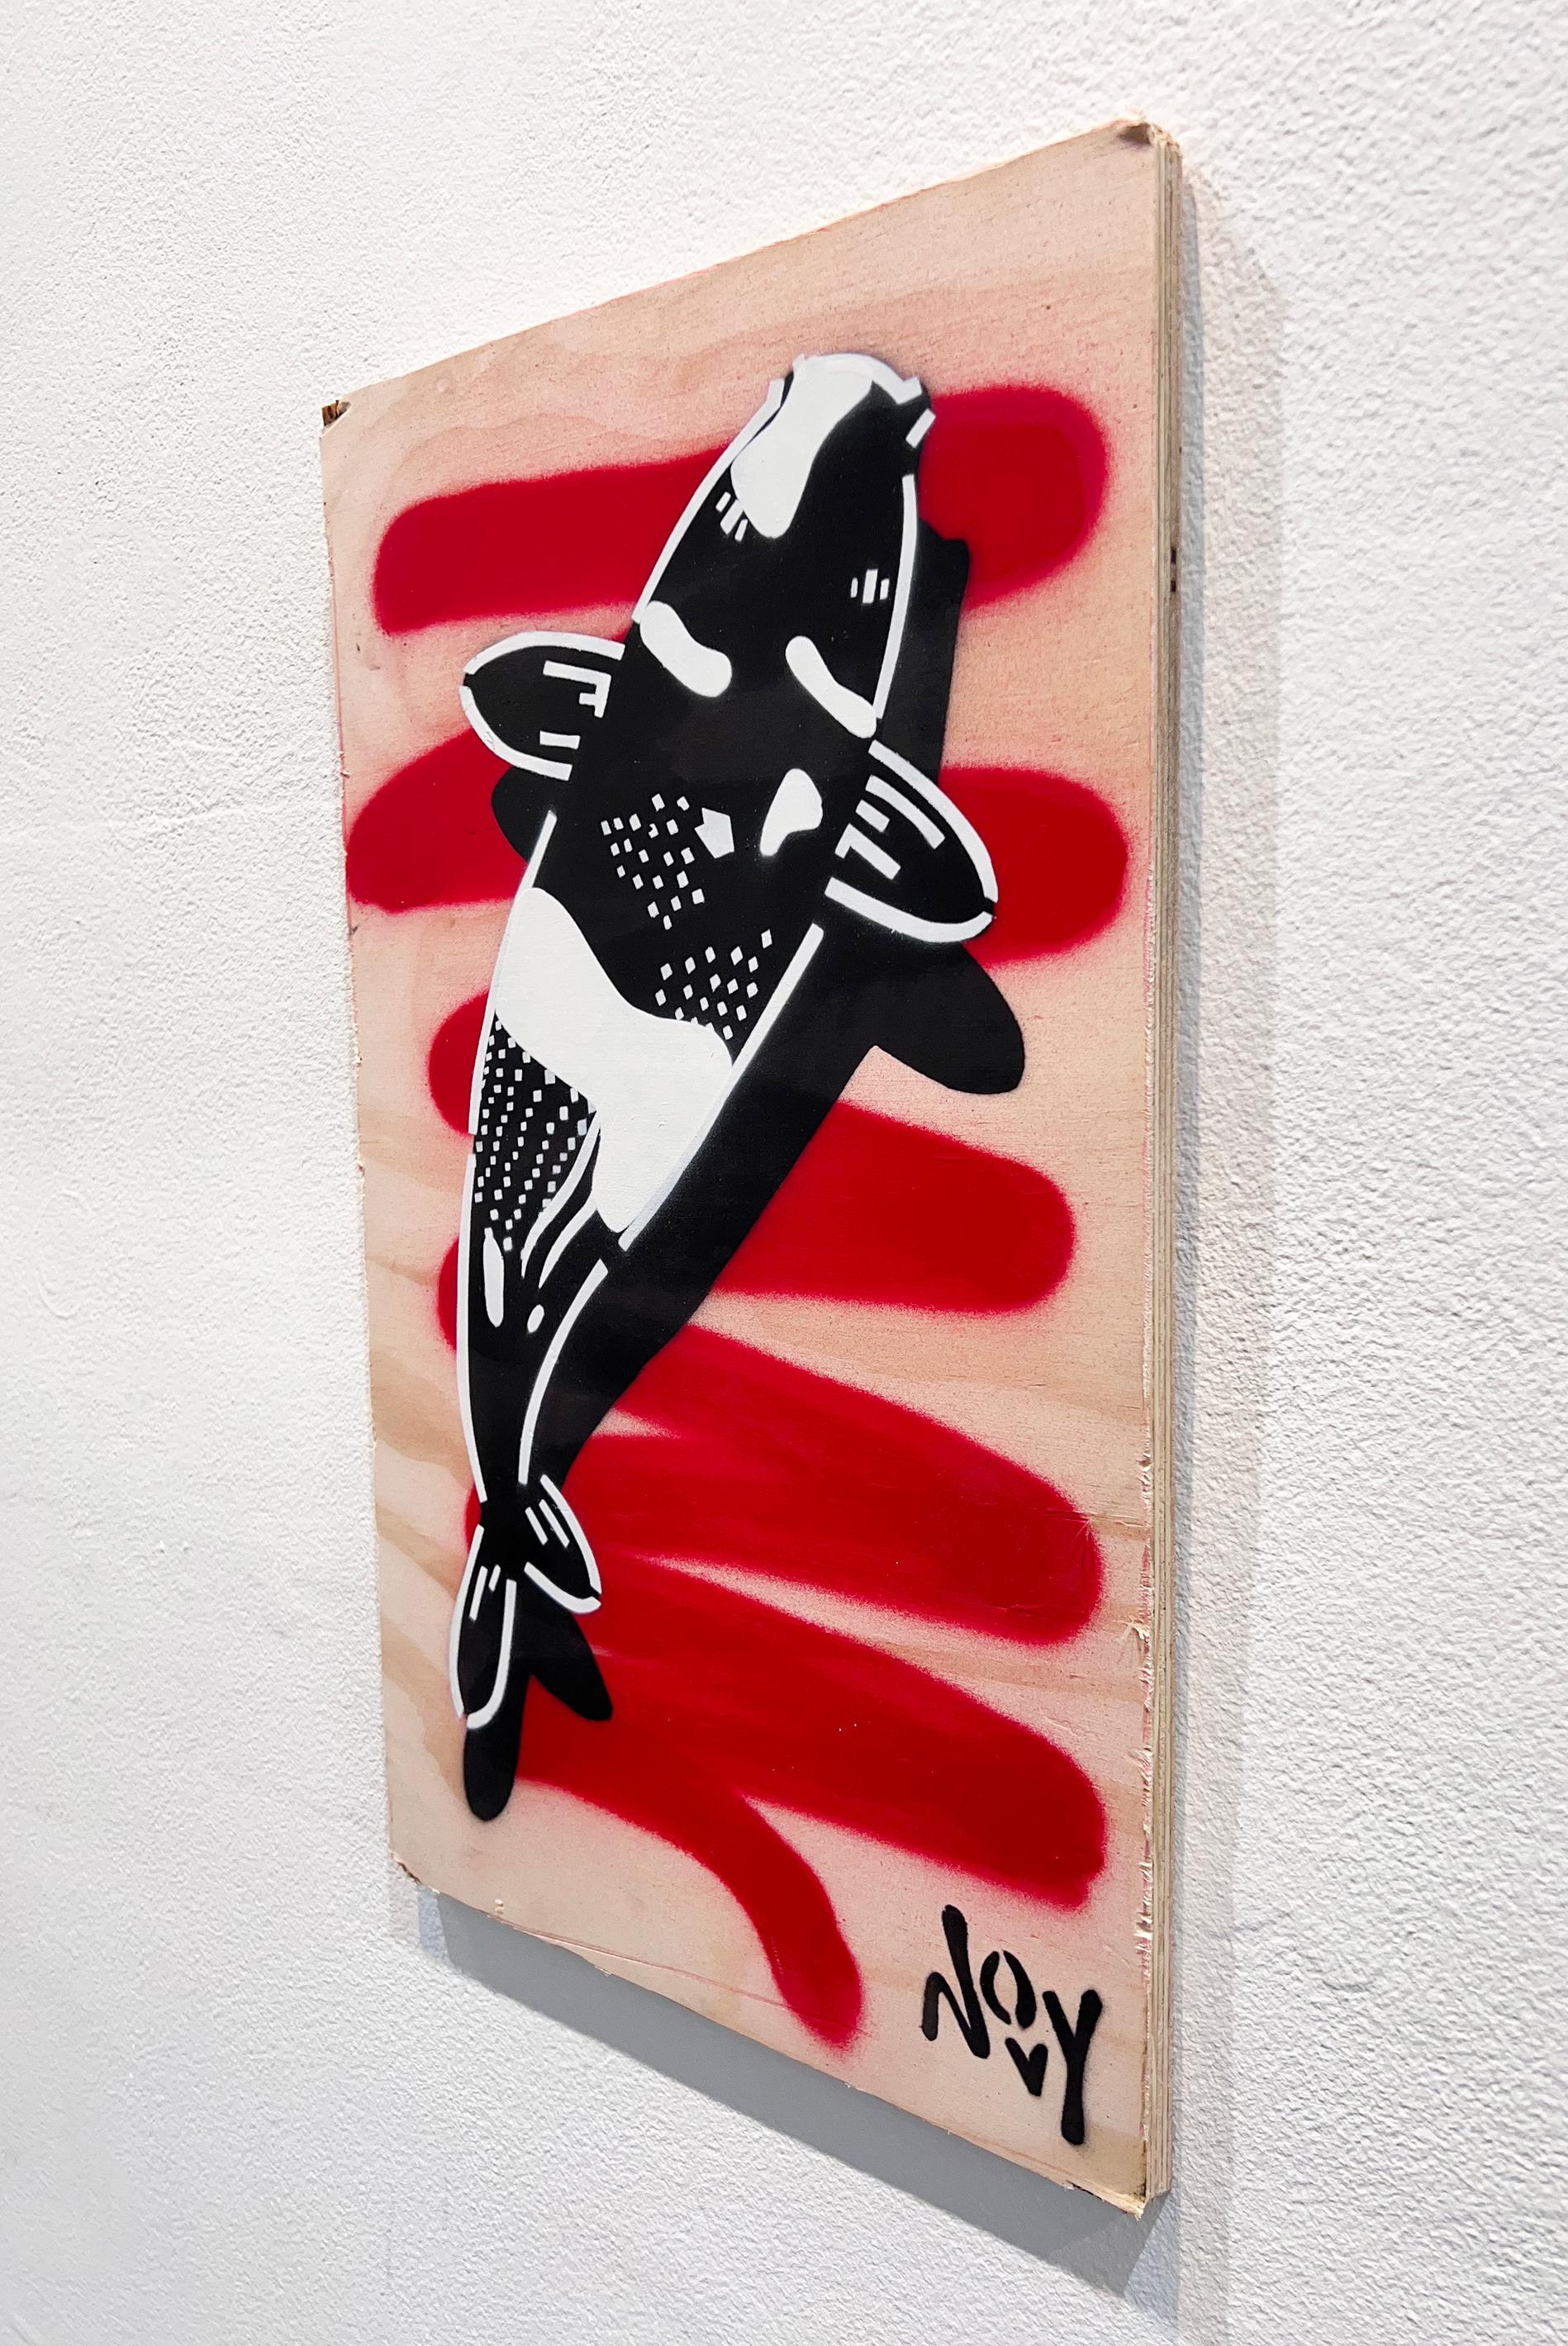 La série de poissons koï la plus connue de Novy fait référence aux affiches de propagande et aux symboles anti-autoritaires de l'art chinois sous le communisme. Les koïs symbolisent traditionnellement les leçons et les épreuves que les gens